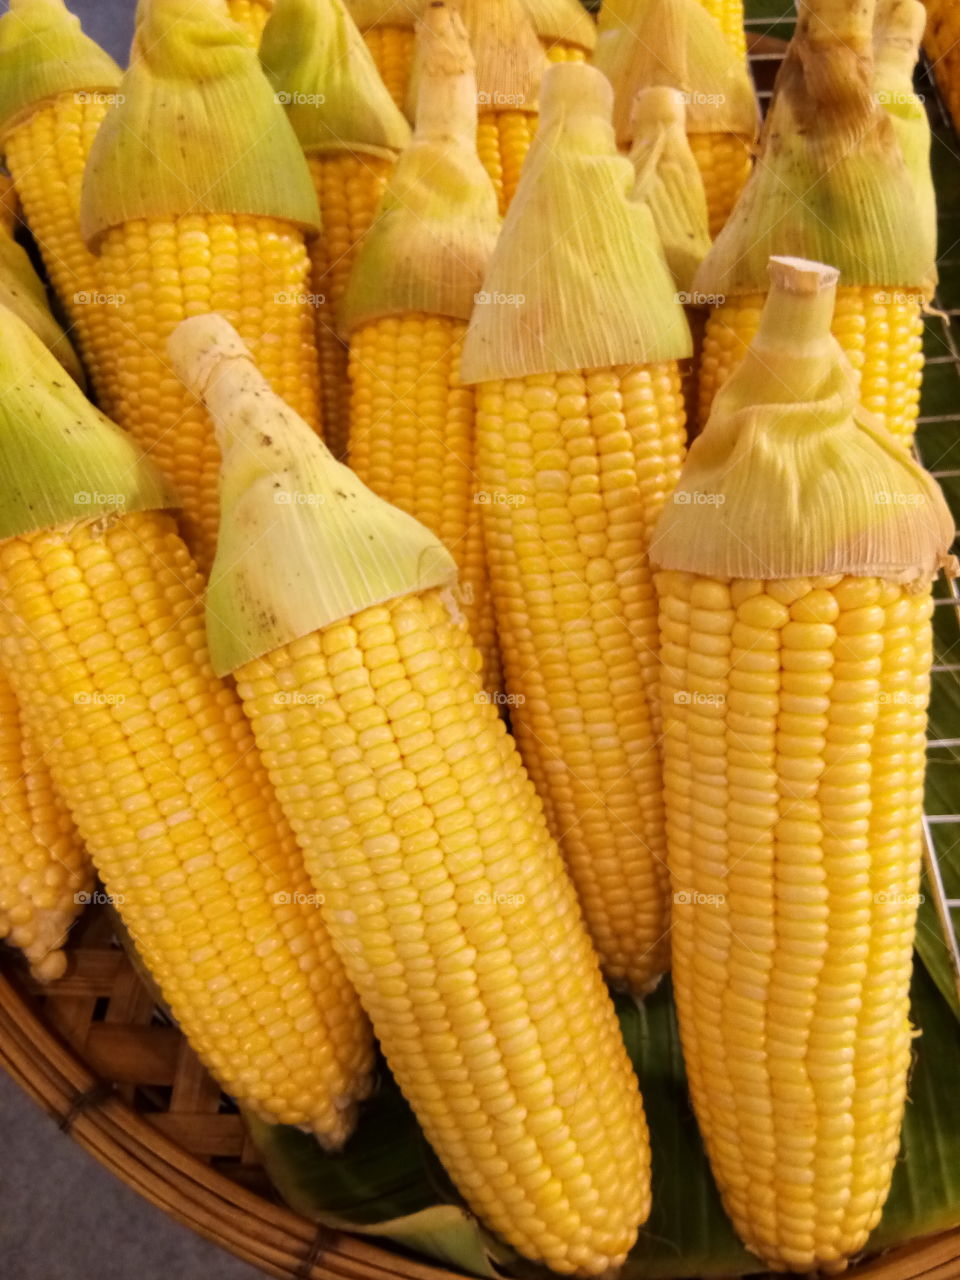 corn
vegetable
food
health
good